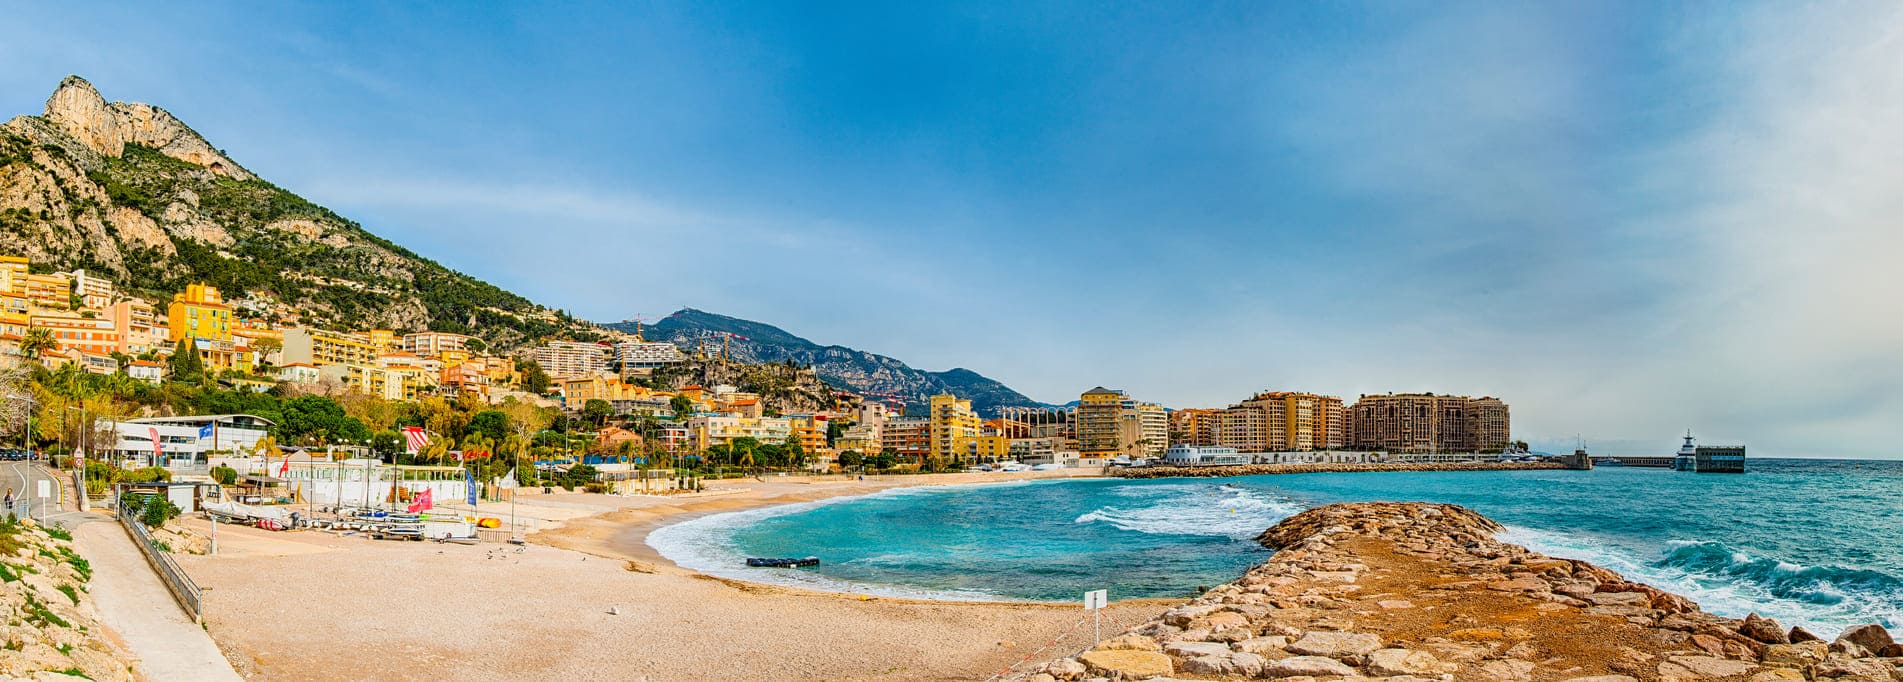 Plage de Monaco sur la Côte d'Azur